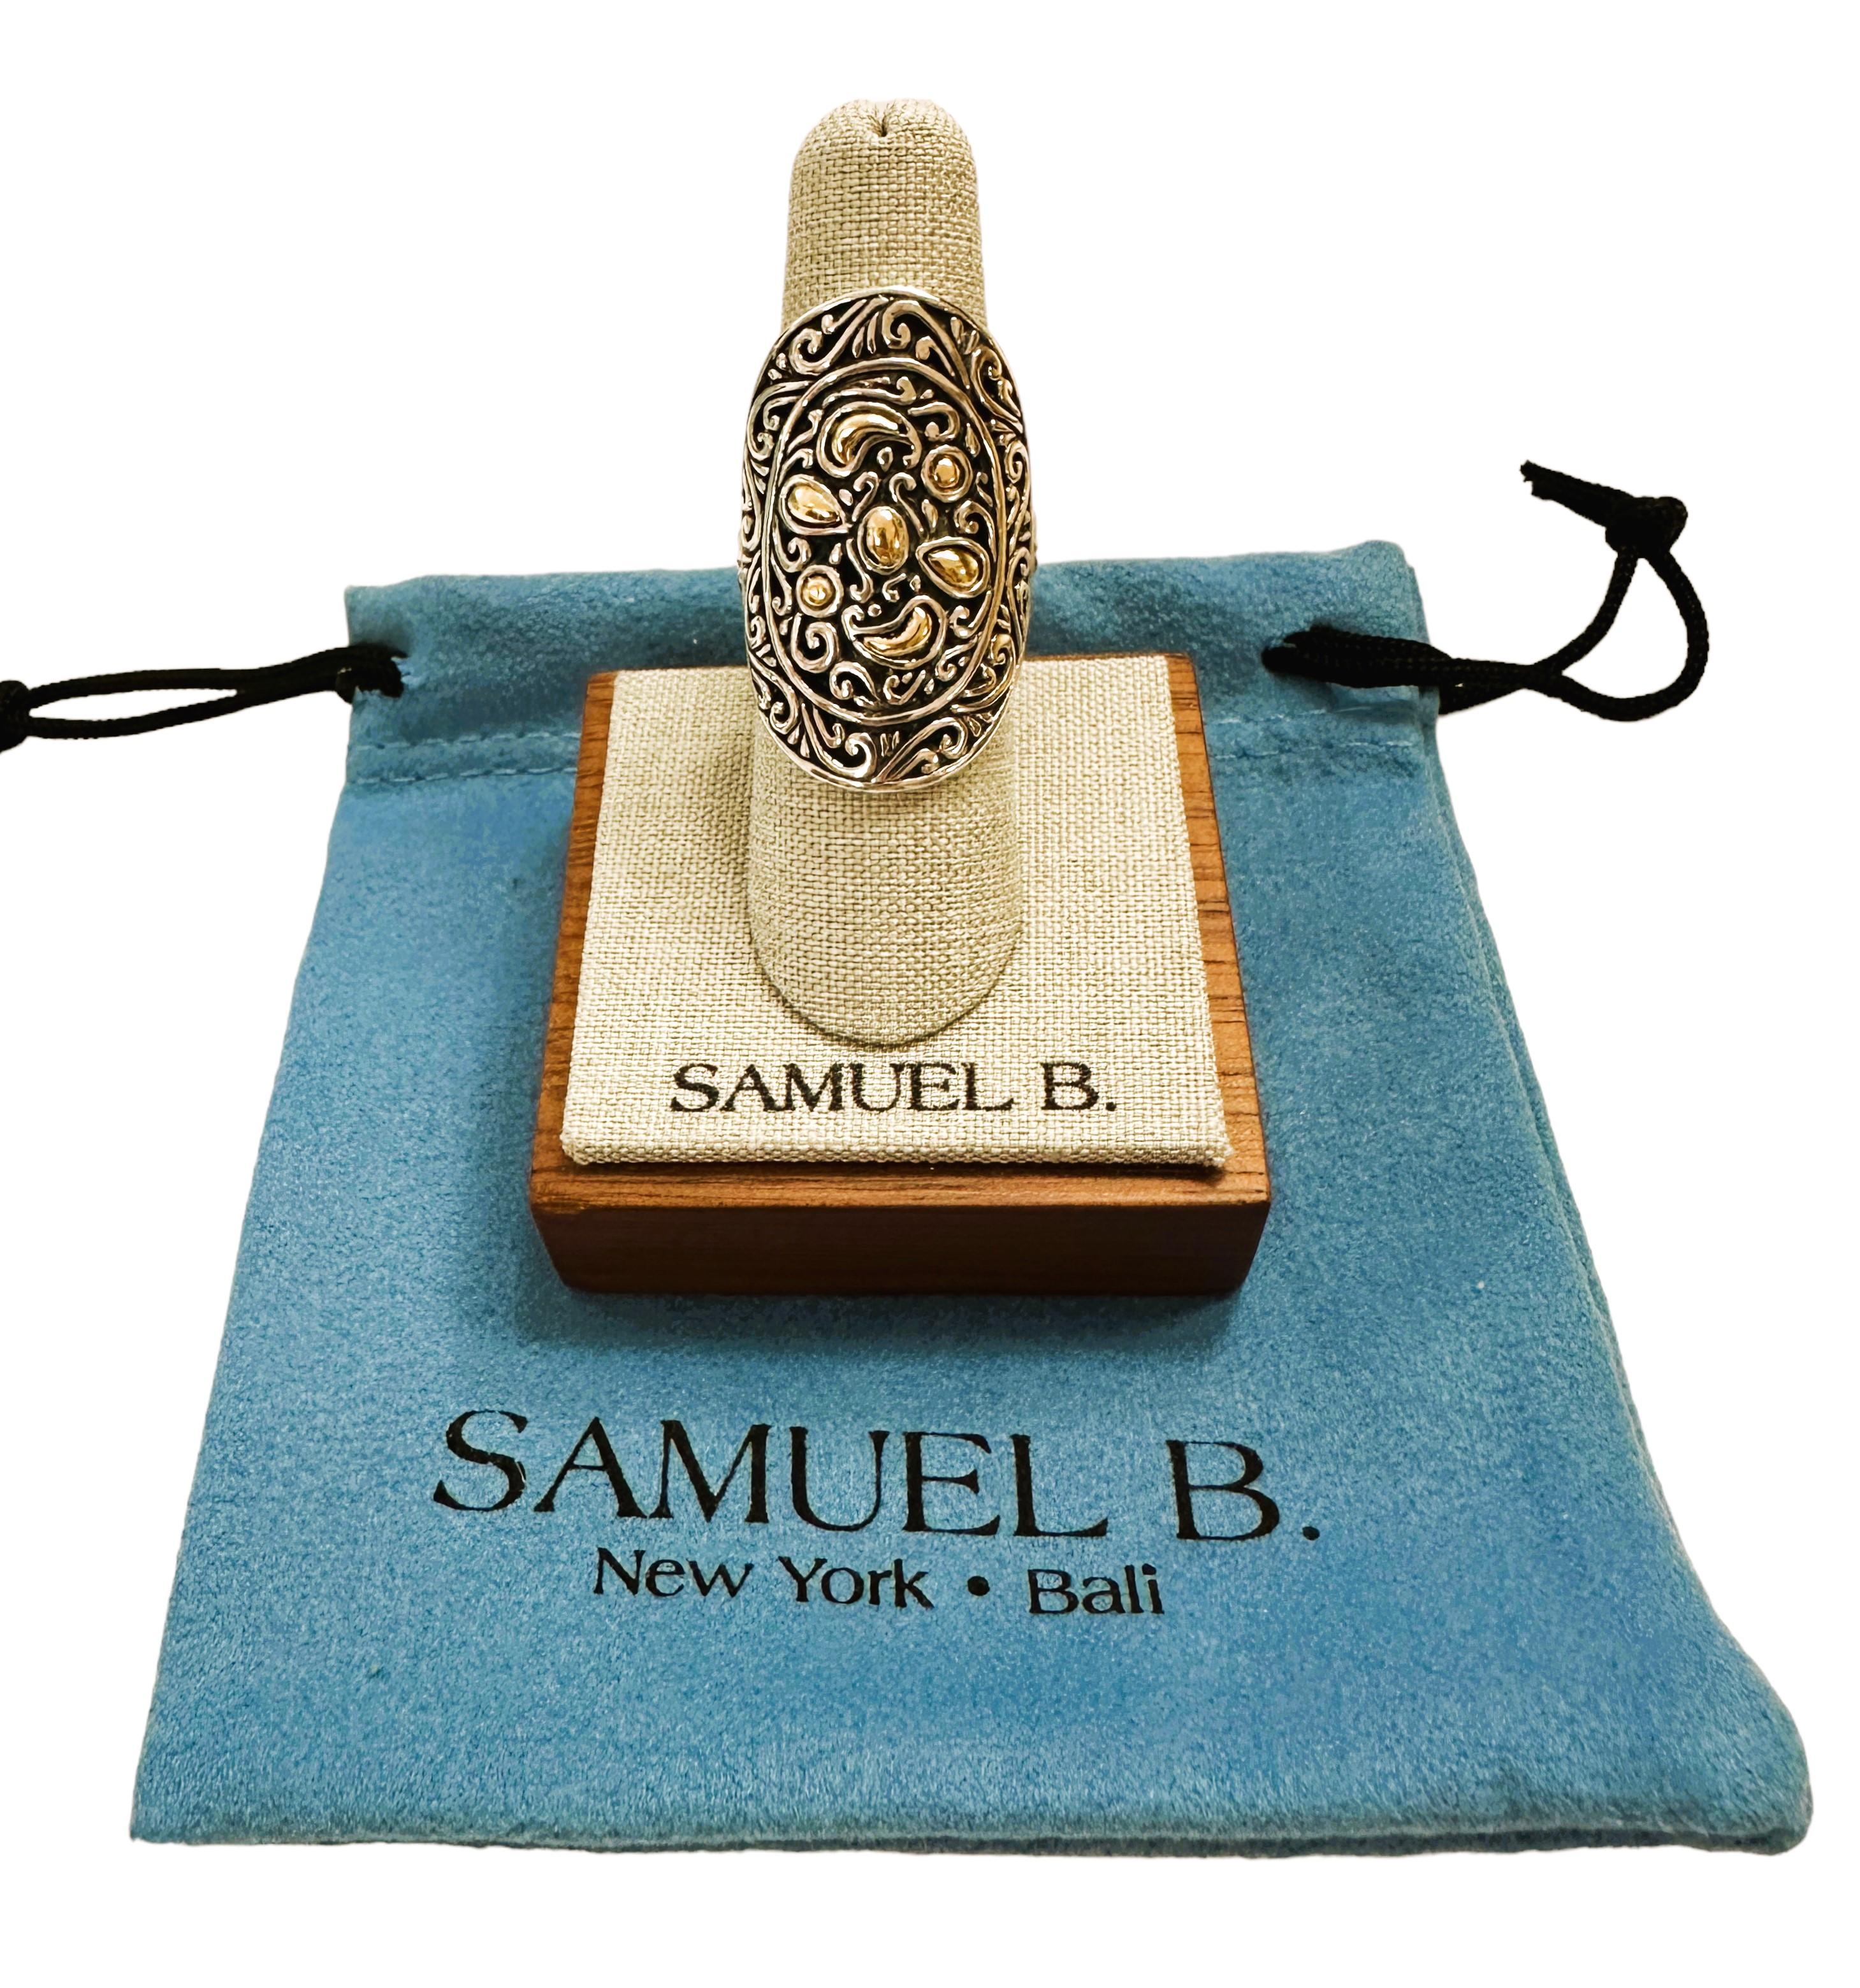 Dies ist ein schöner Ring von Samuel B Benham BJC.  Zum Lieferumfang gehören der Ständer und eine blaue Tasche. Es ist einfach ein einzigartiges Design.  Es ist eine Größe 6,5 und der Ring ist 1,25 Zoll lang und .75 Zoll breit.  Er ist mit 